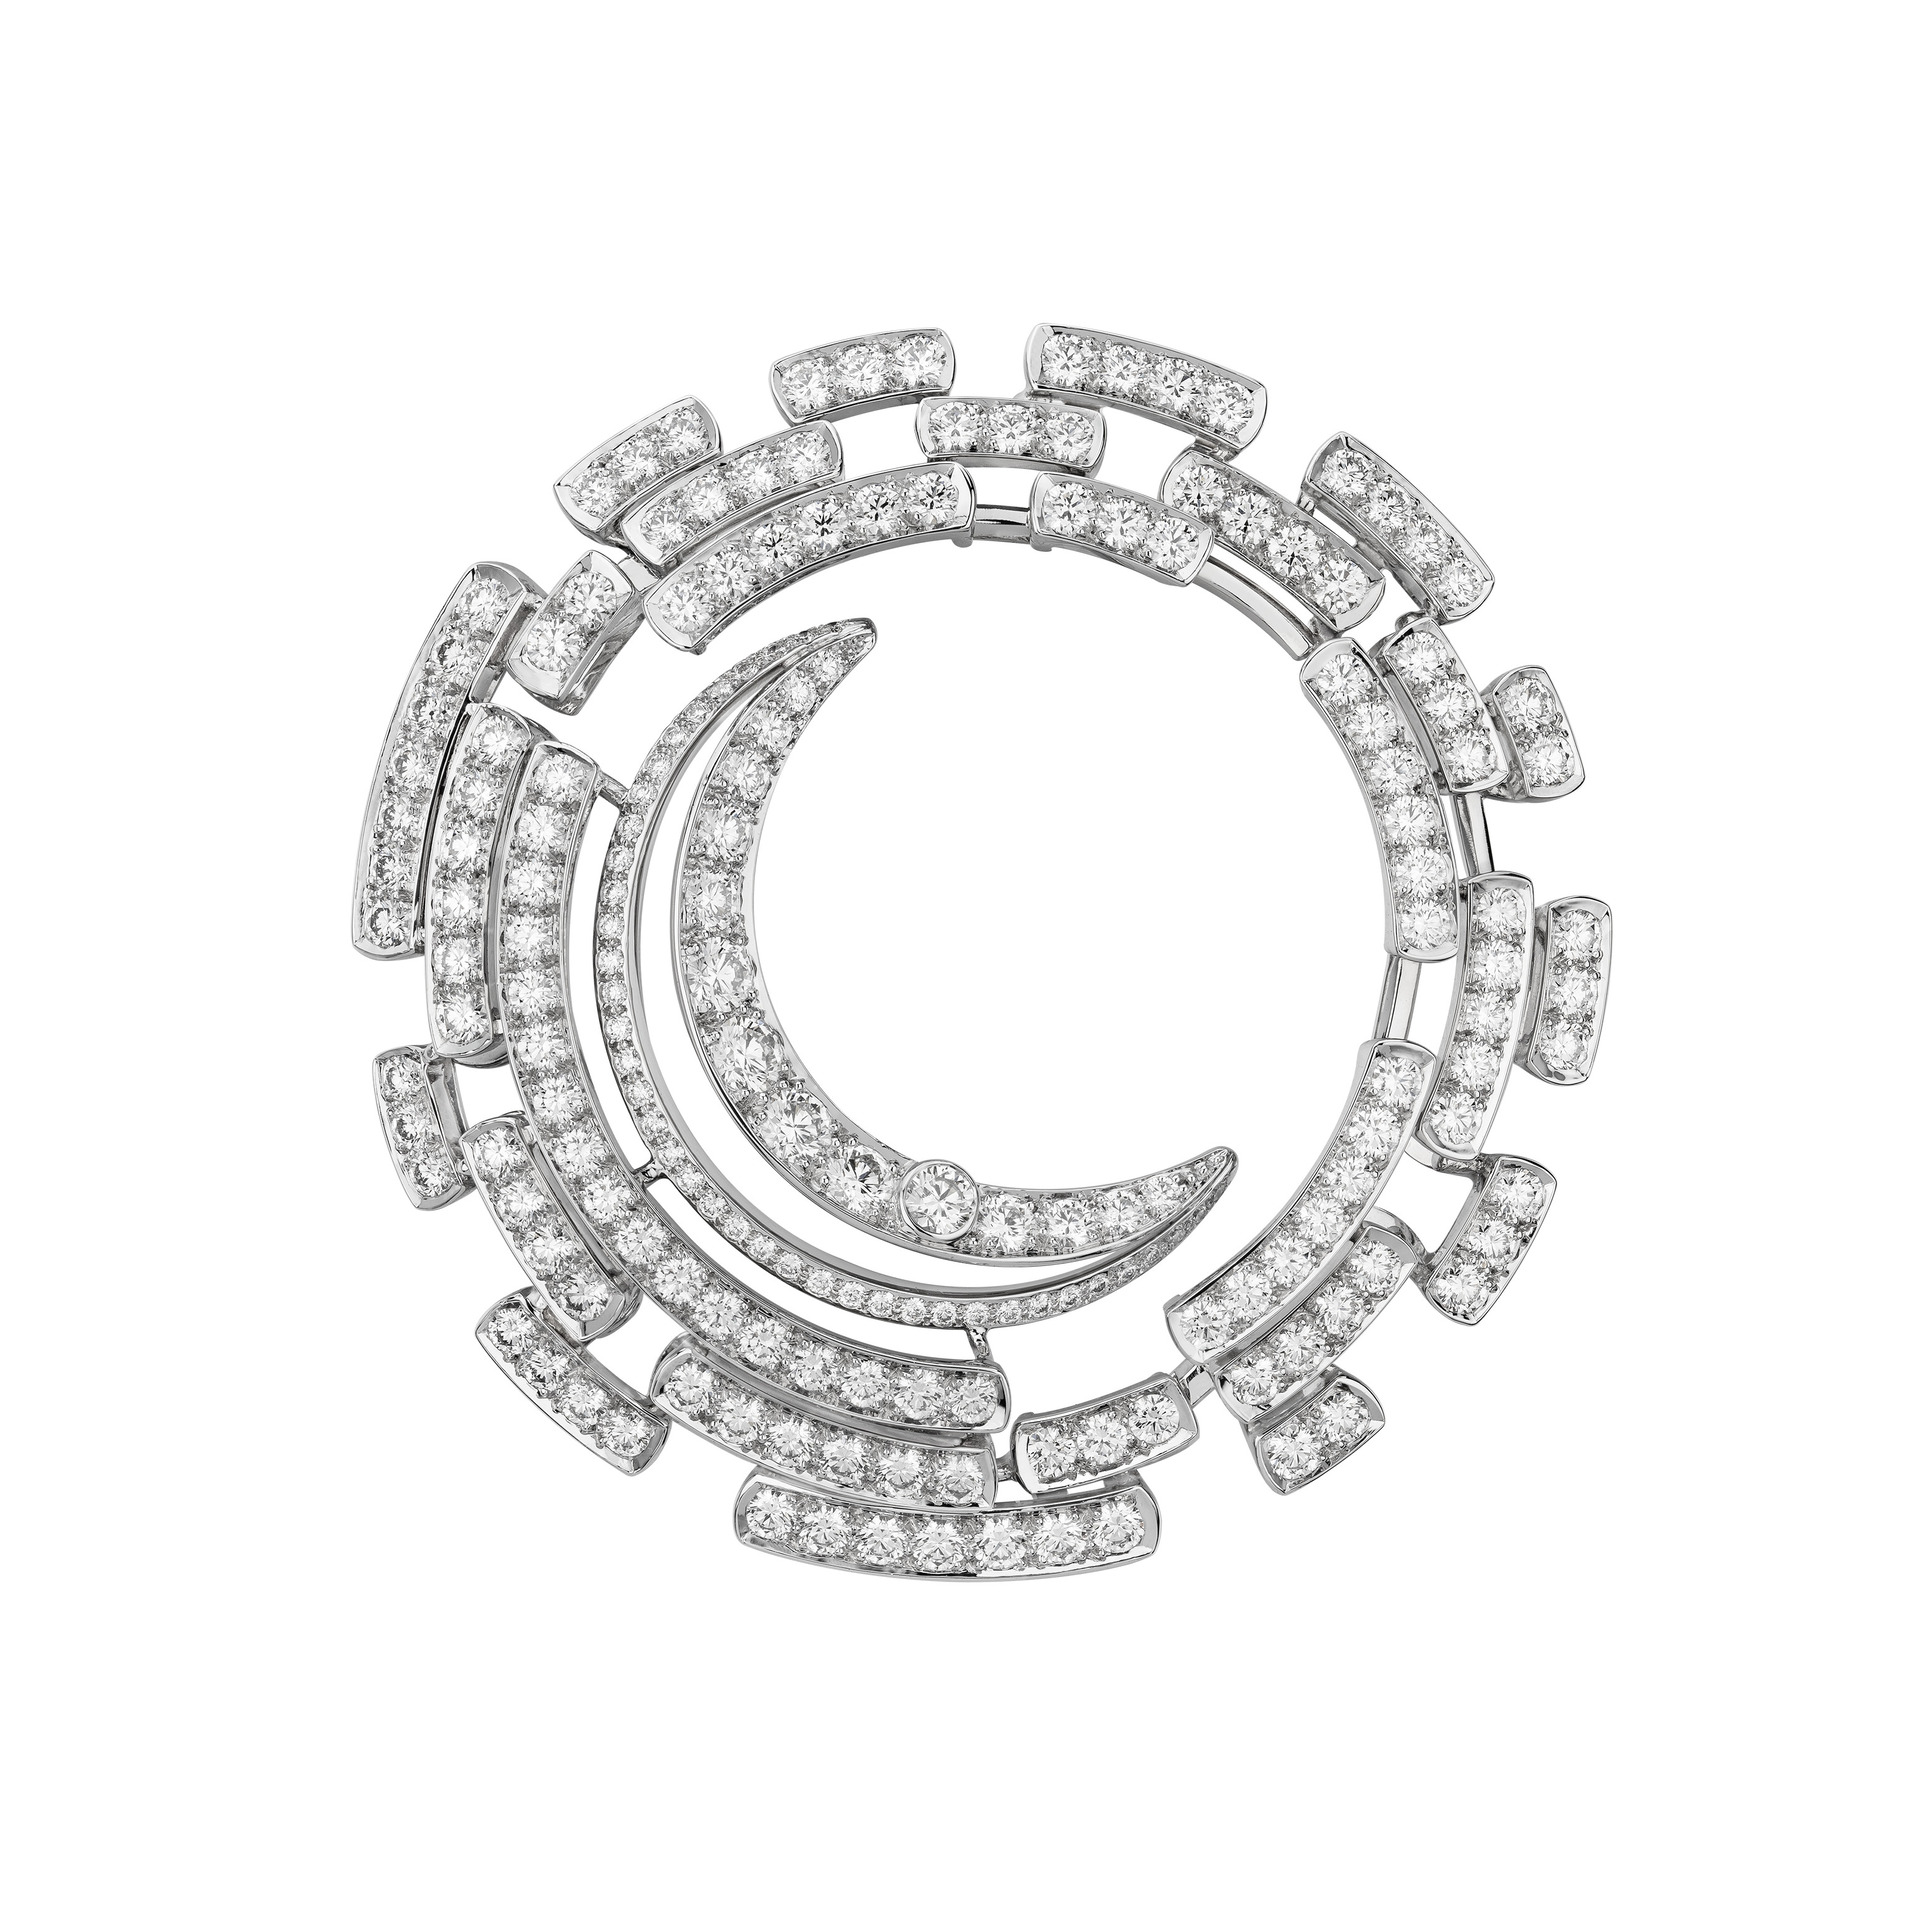 Chanel: “Bijoux de Diamants” inspires “1932”